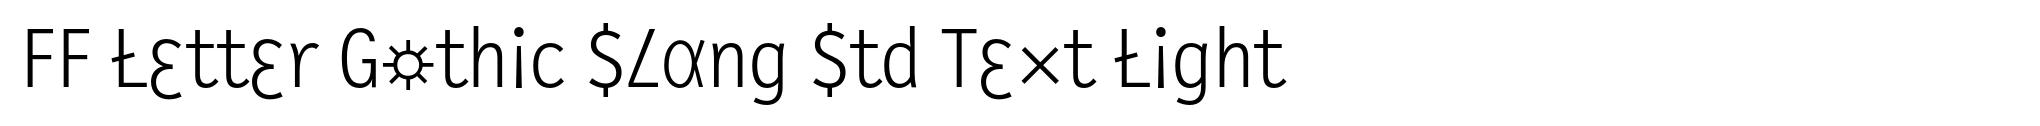 FF Letter Gothic Slang Std Text Light image